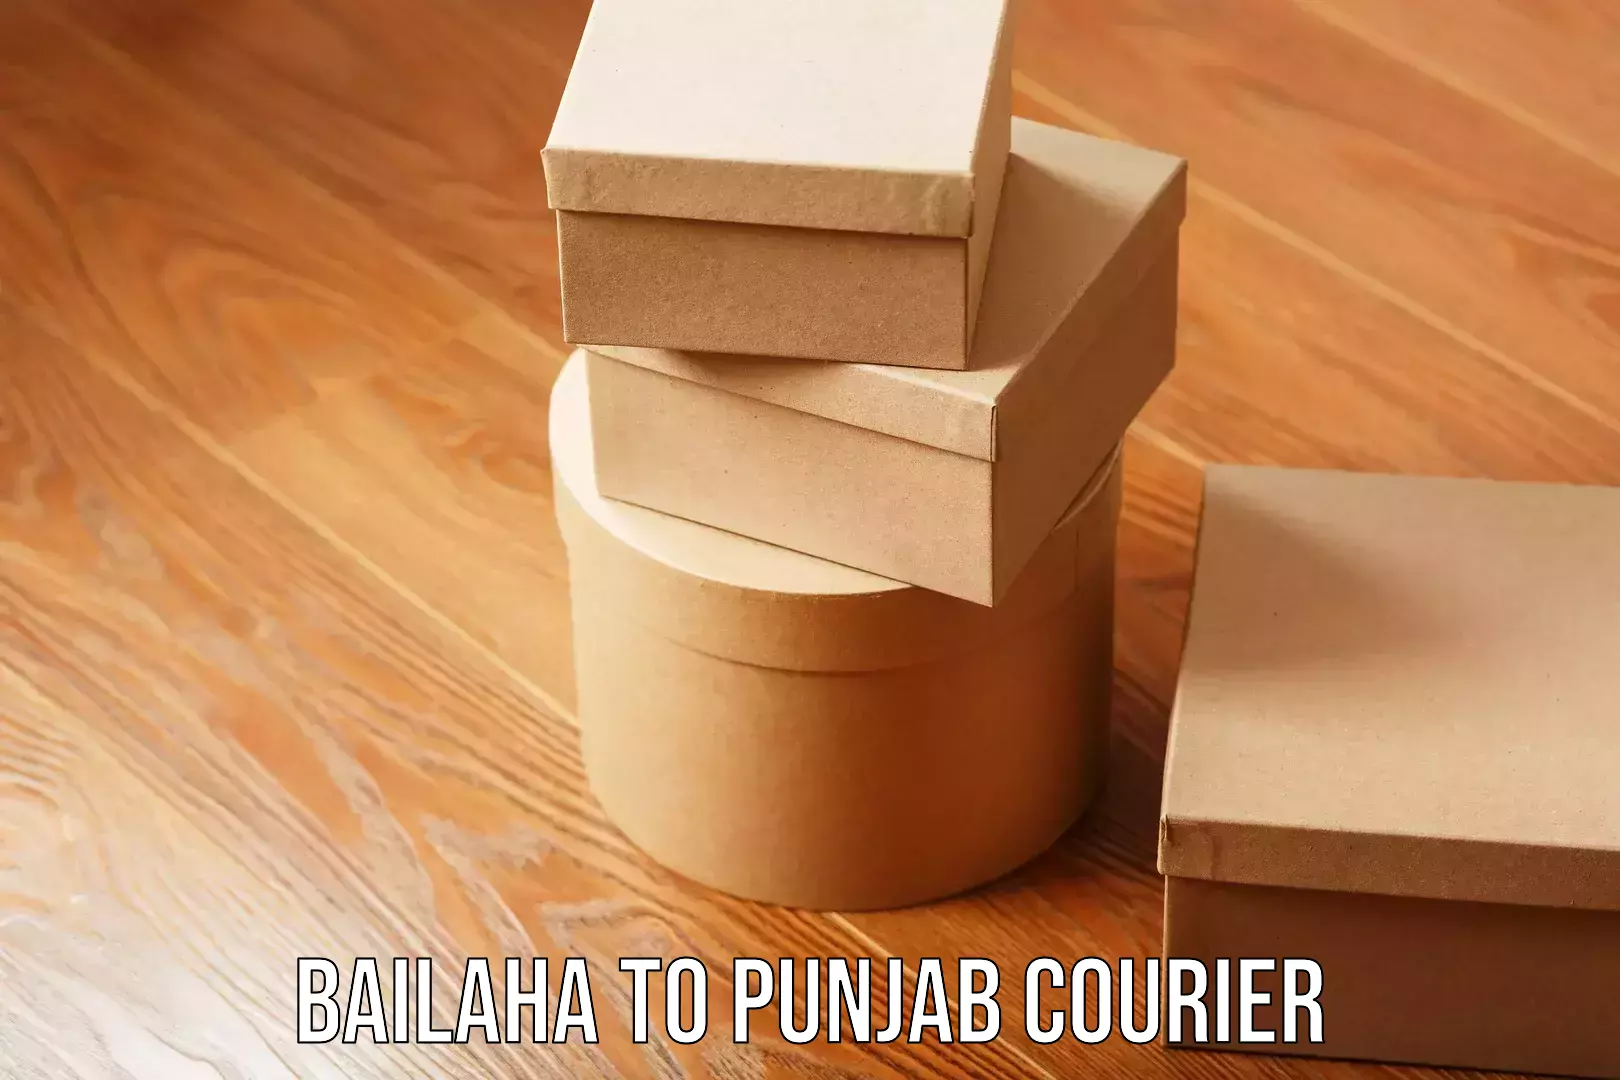 Courier service comparison Bailaha to Punjab